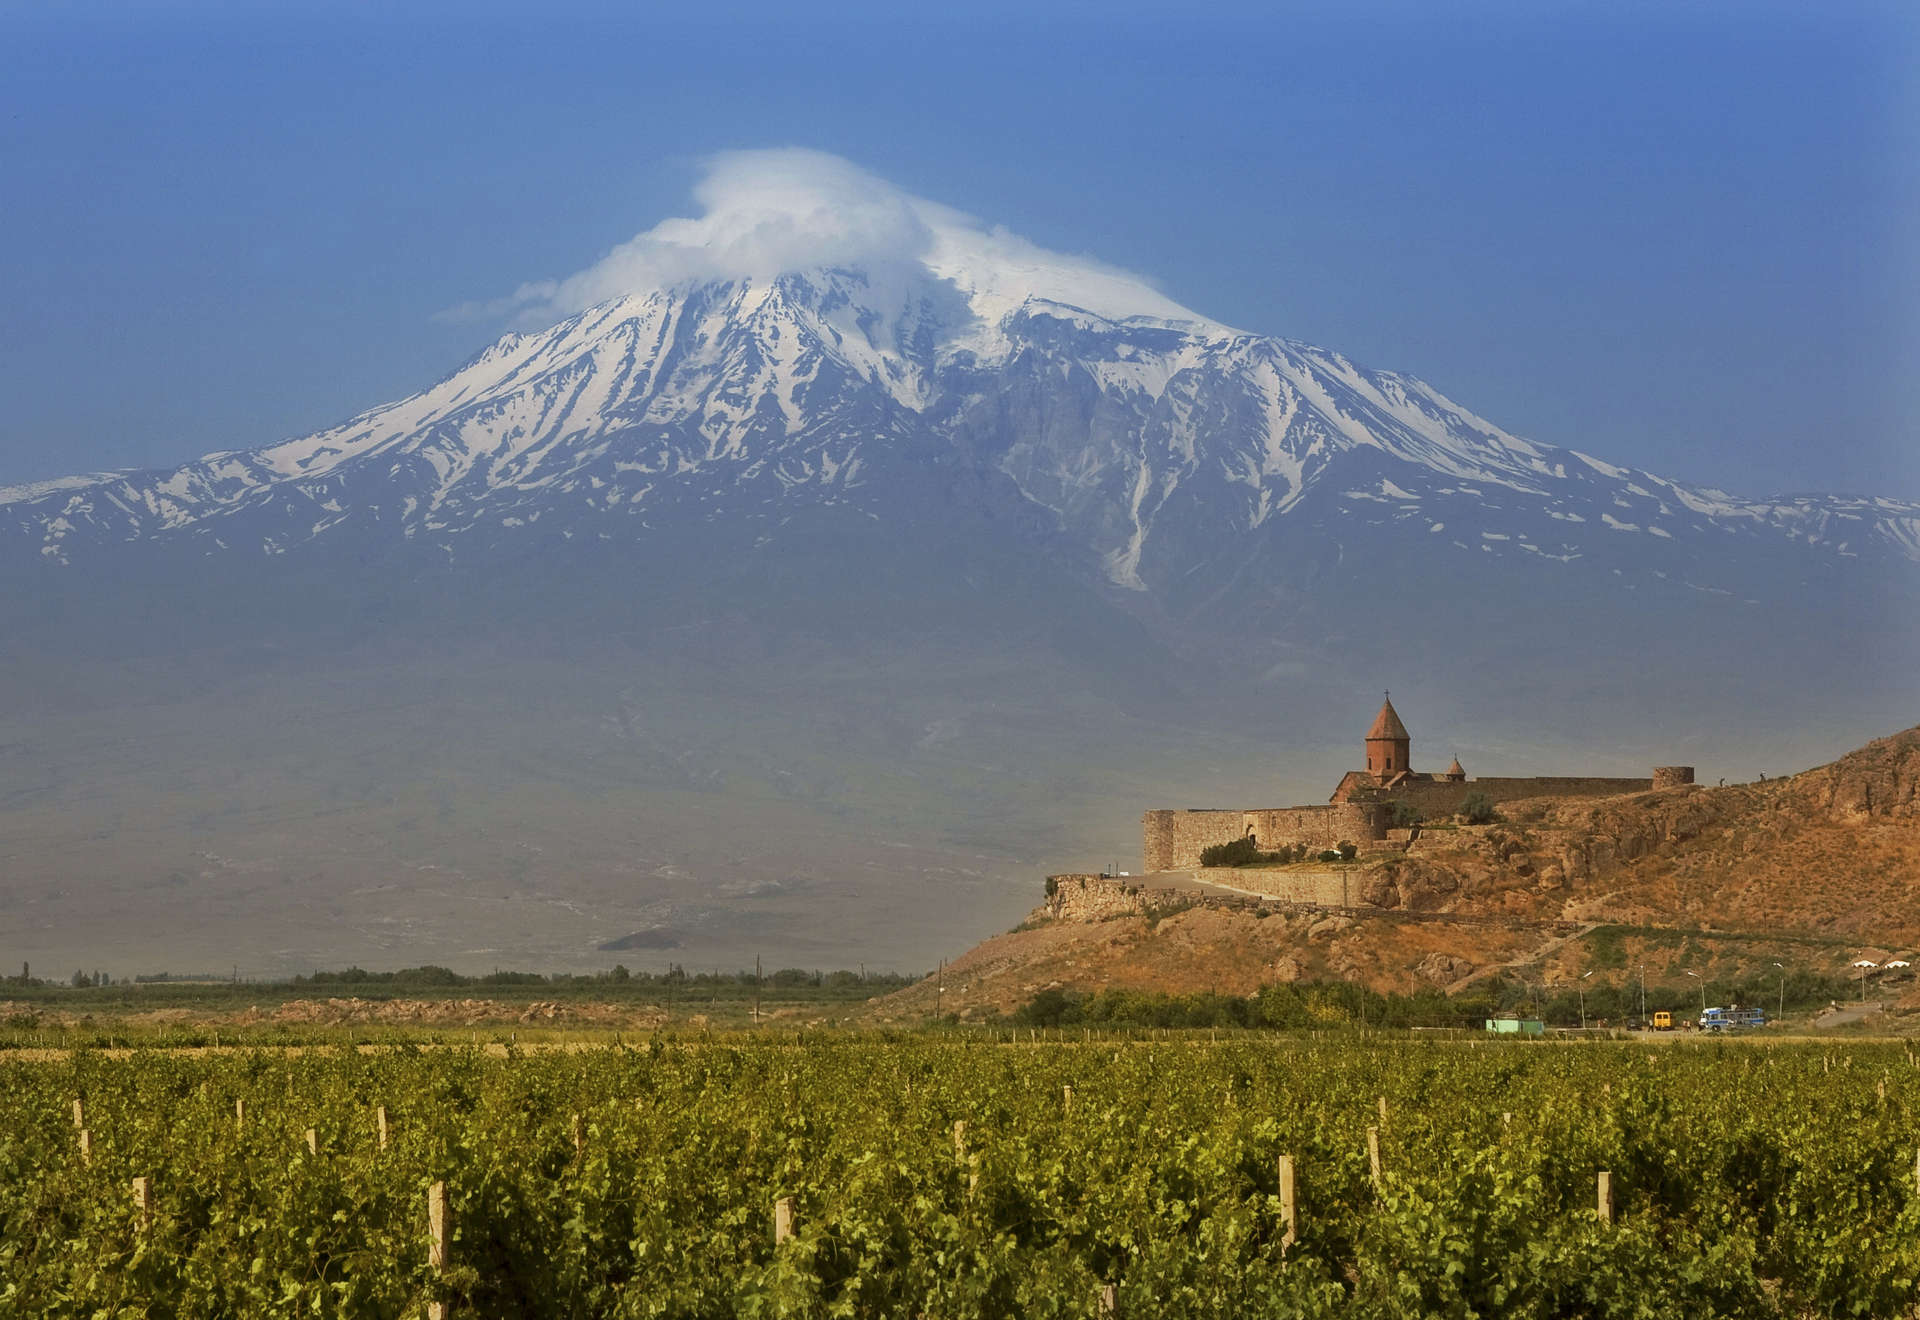 An Armenian vineyard